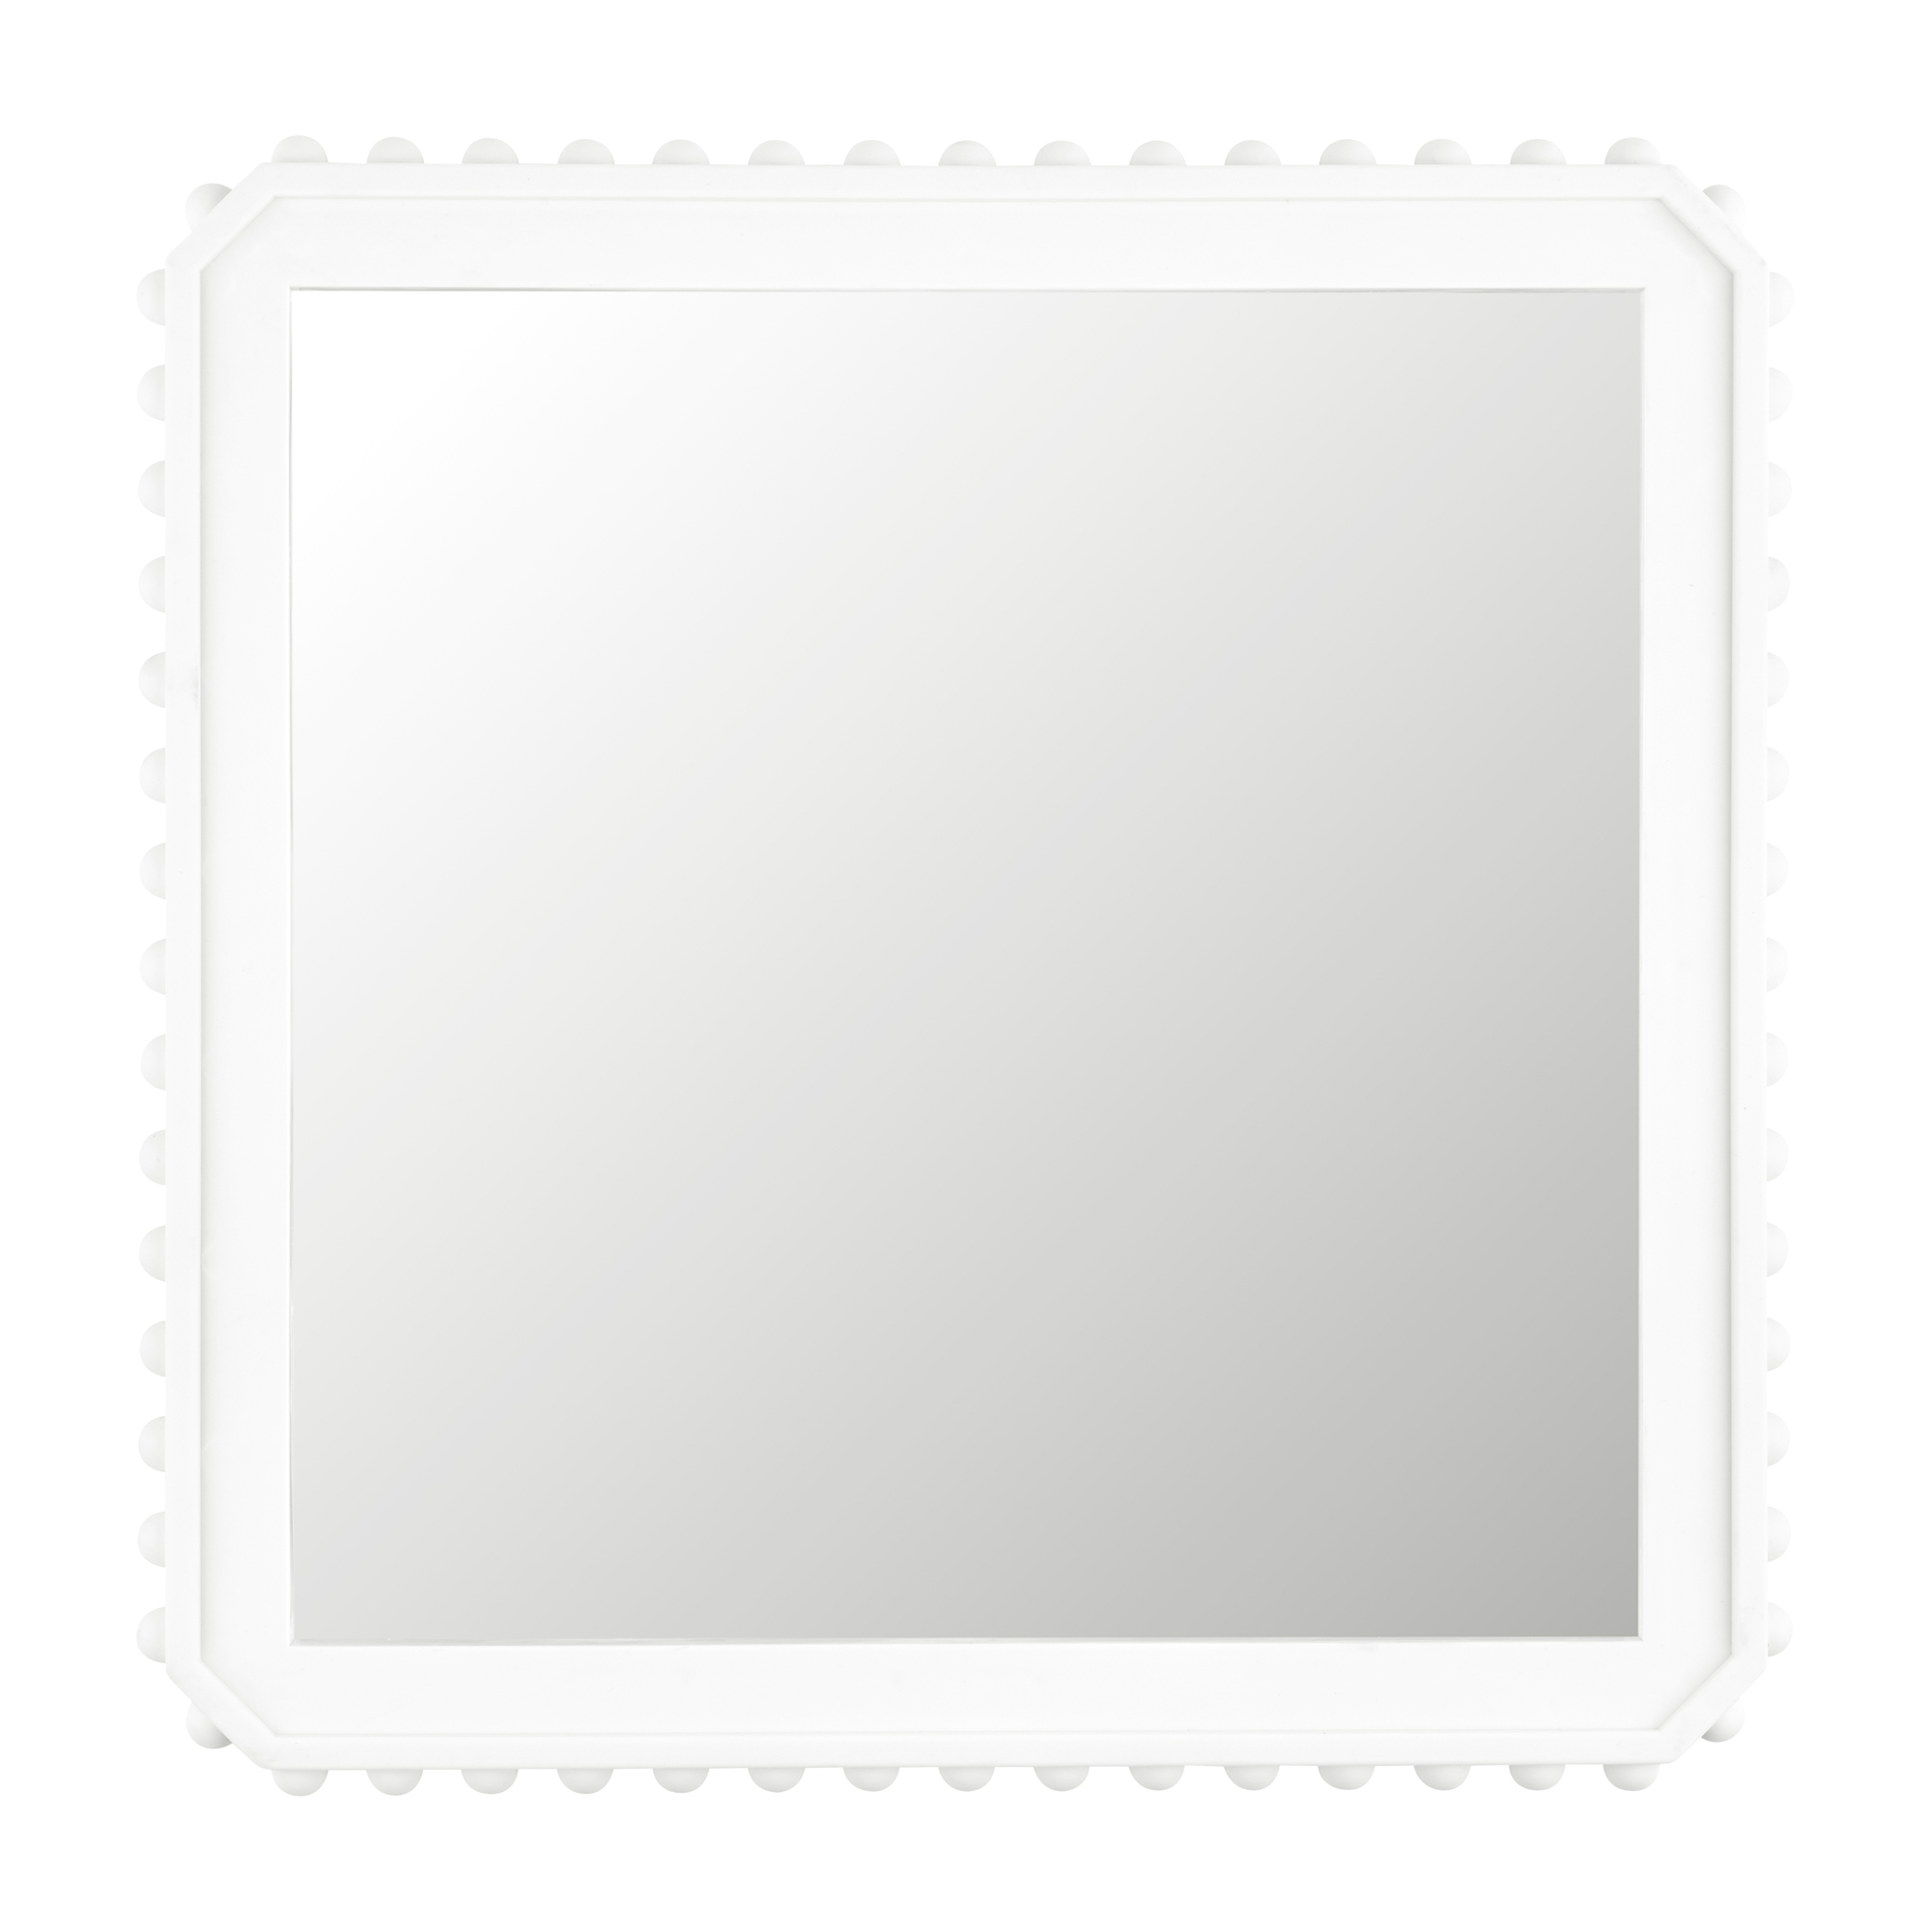 Зеркало интерьерное Moroshka, белое 40х40 см